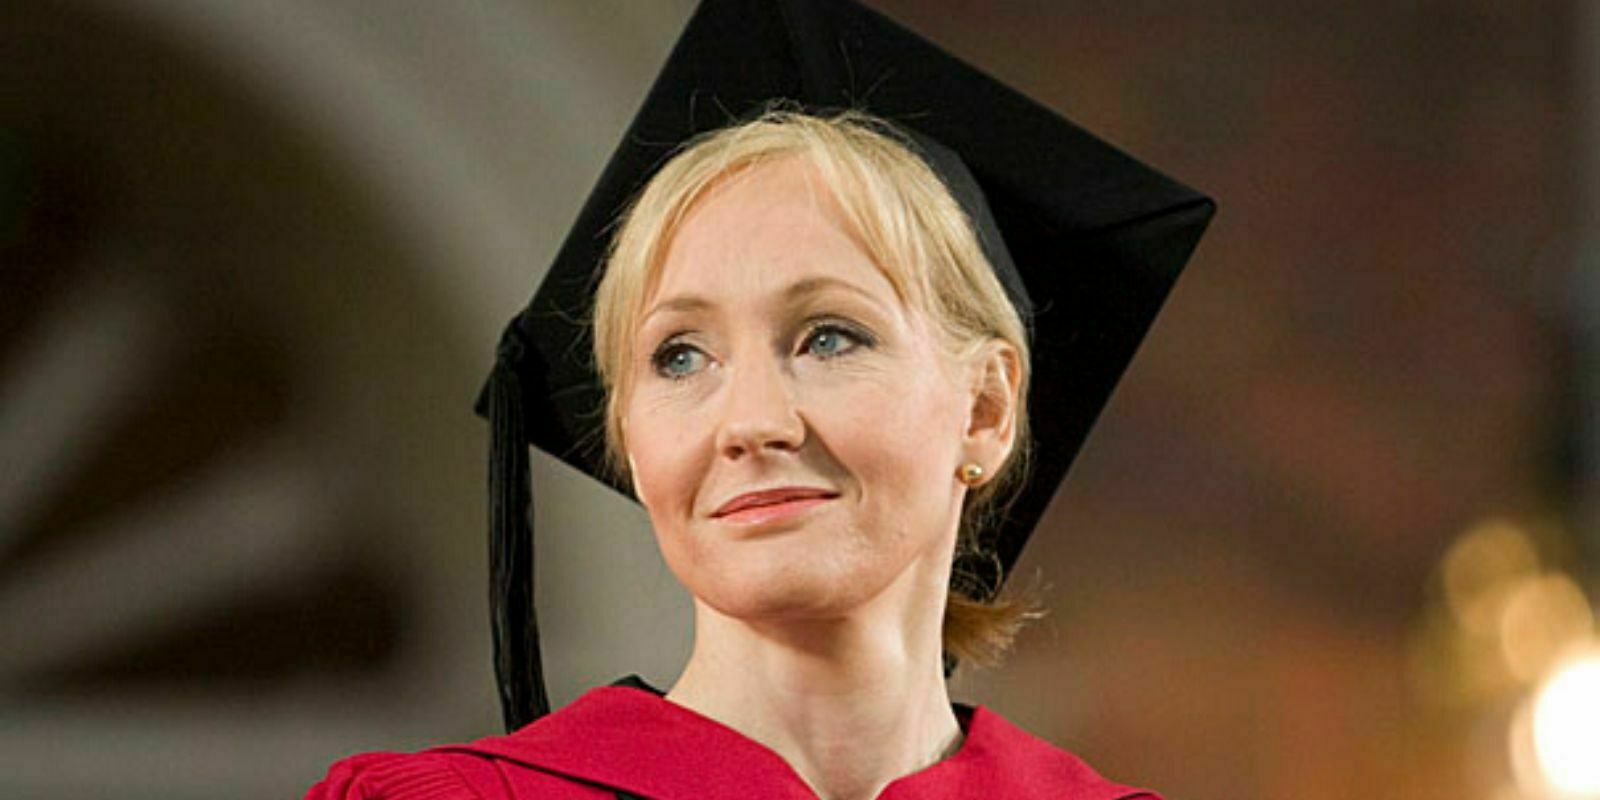 La communauté Bitcoin fait la classe à J.K. Rowling